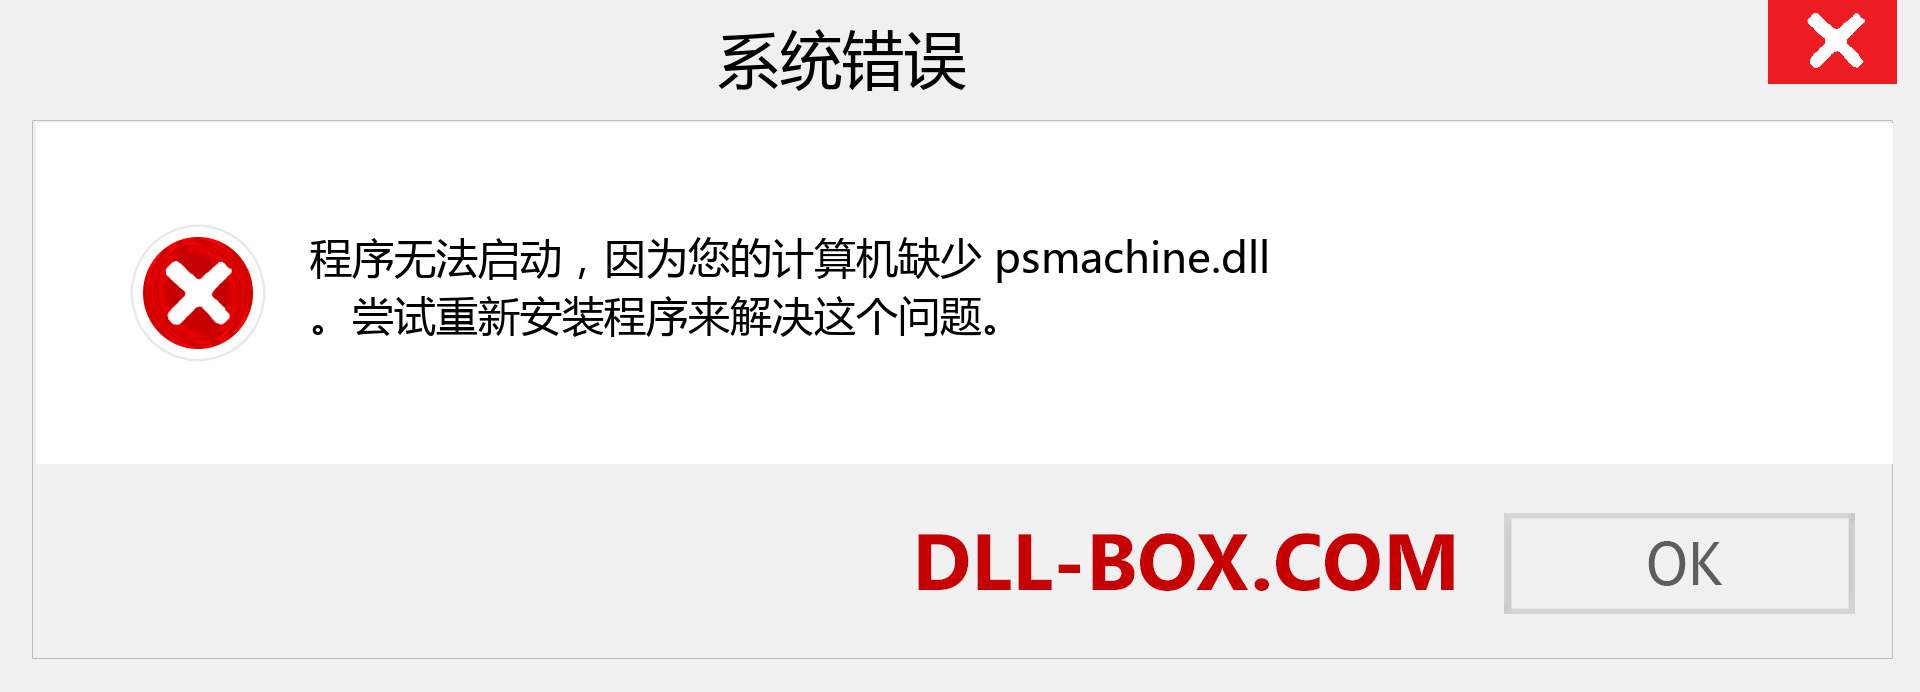 psmachine.dll 文件丢失？。 适用于 Windows 7、8、10 的下载 - 修复 Windows、照片、图像上的 psmachine dll 丢失错误